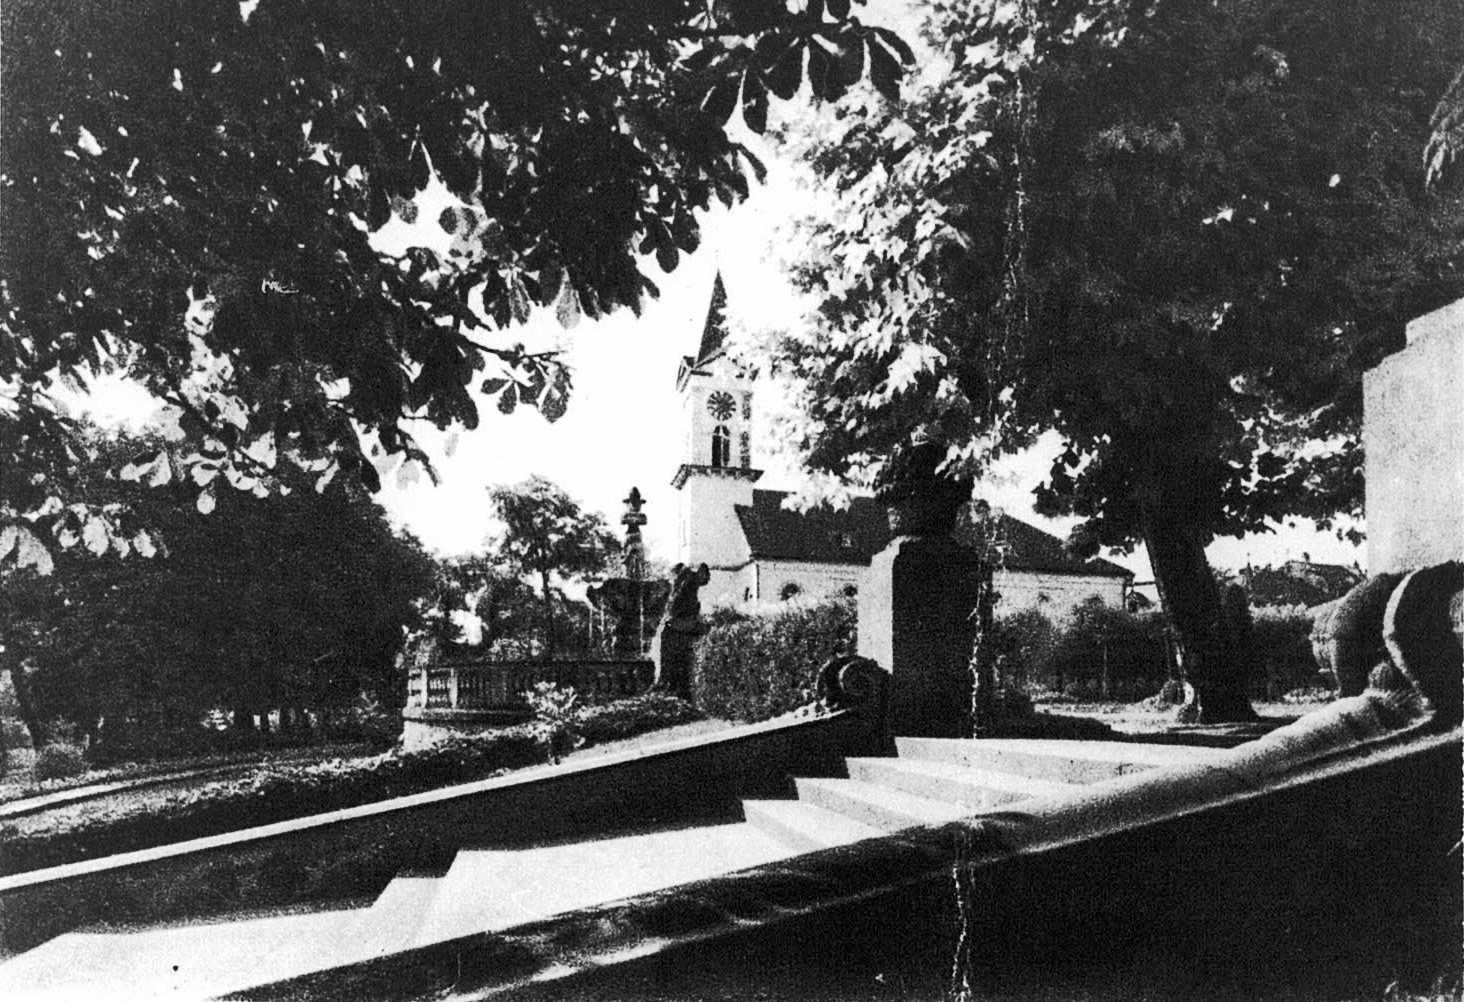 Foto-Sammlung Adolf Krapp, Ordner 14: Kur-Park, 1924 (Museumsgesellschaft Bad Dürkheim e.V. CC BY-NC-SA)